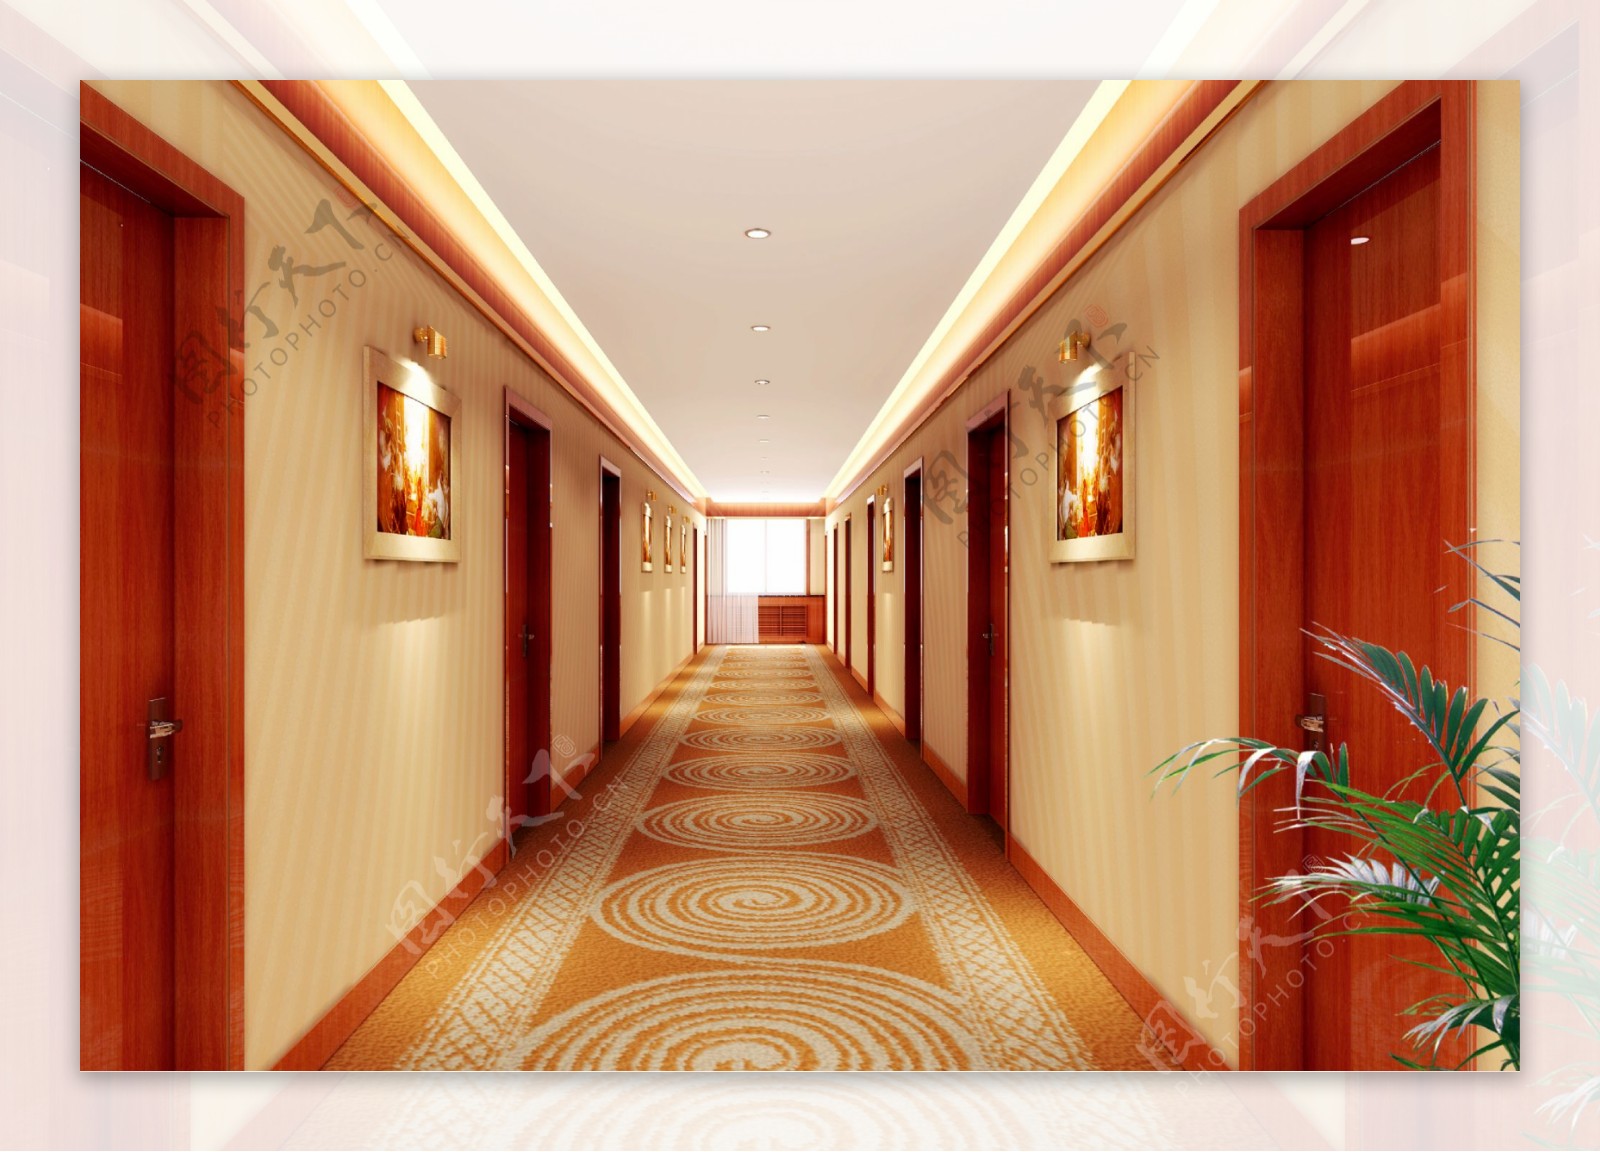 现代酒店走廊客房 - 效果图交流区-建E室内设计网